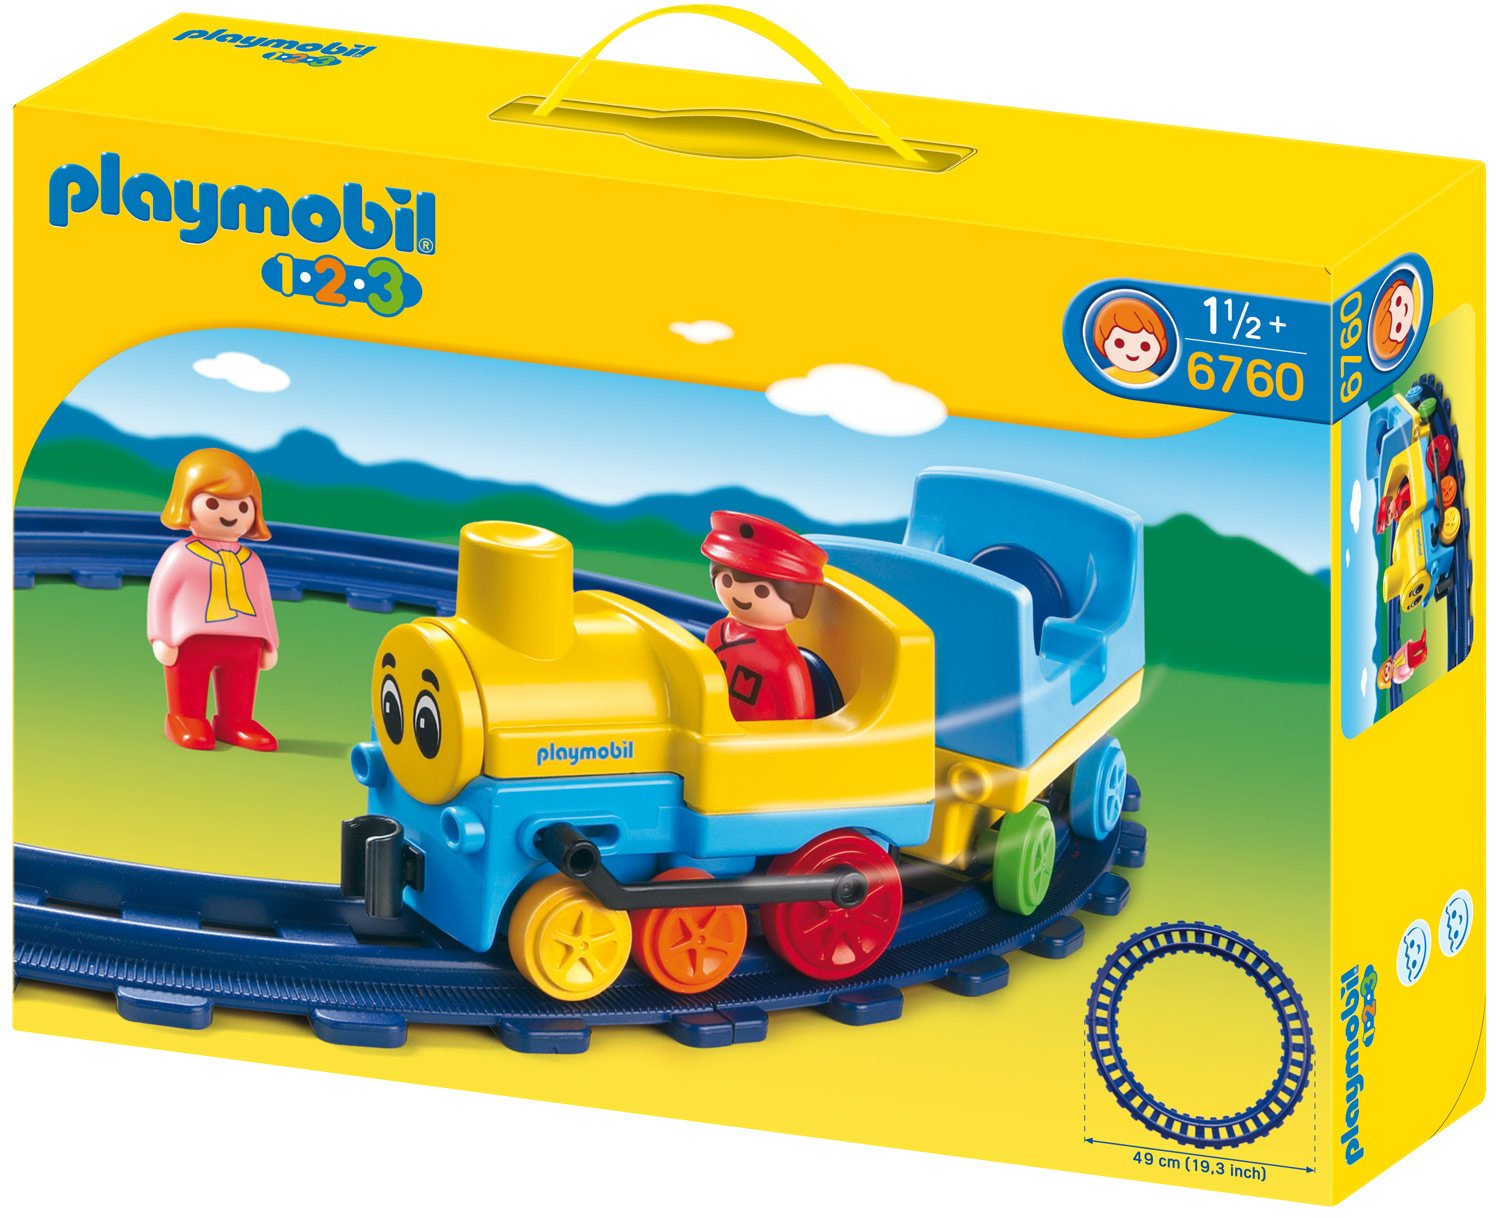 Playmobil 6760 1.2.3 Train